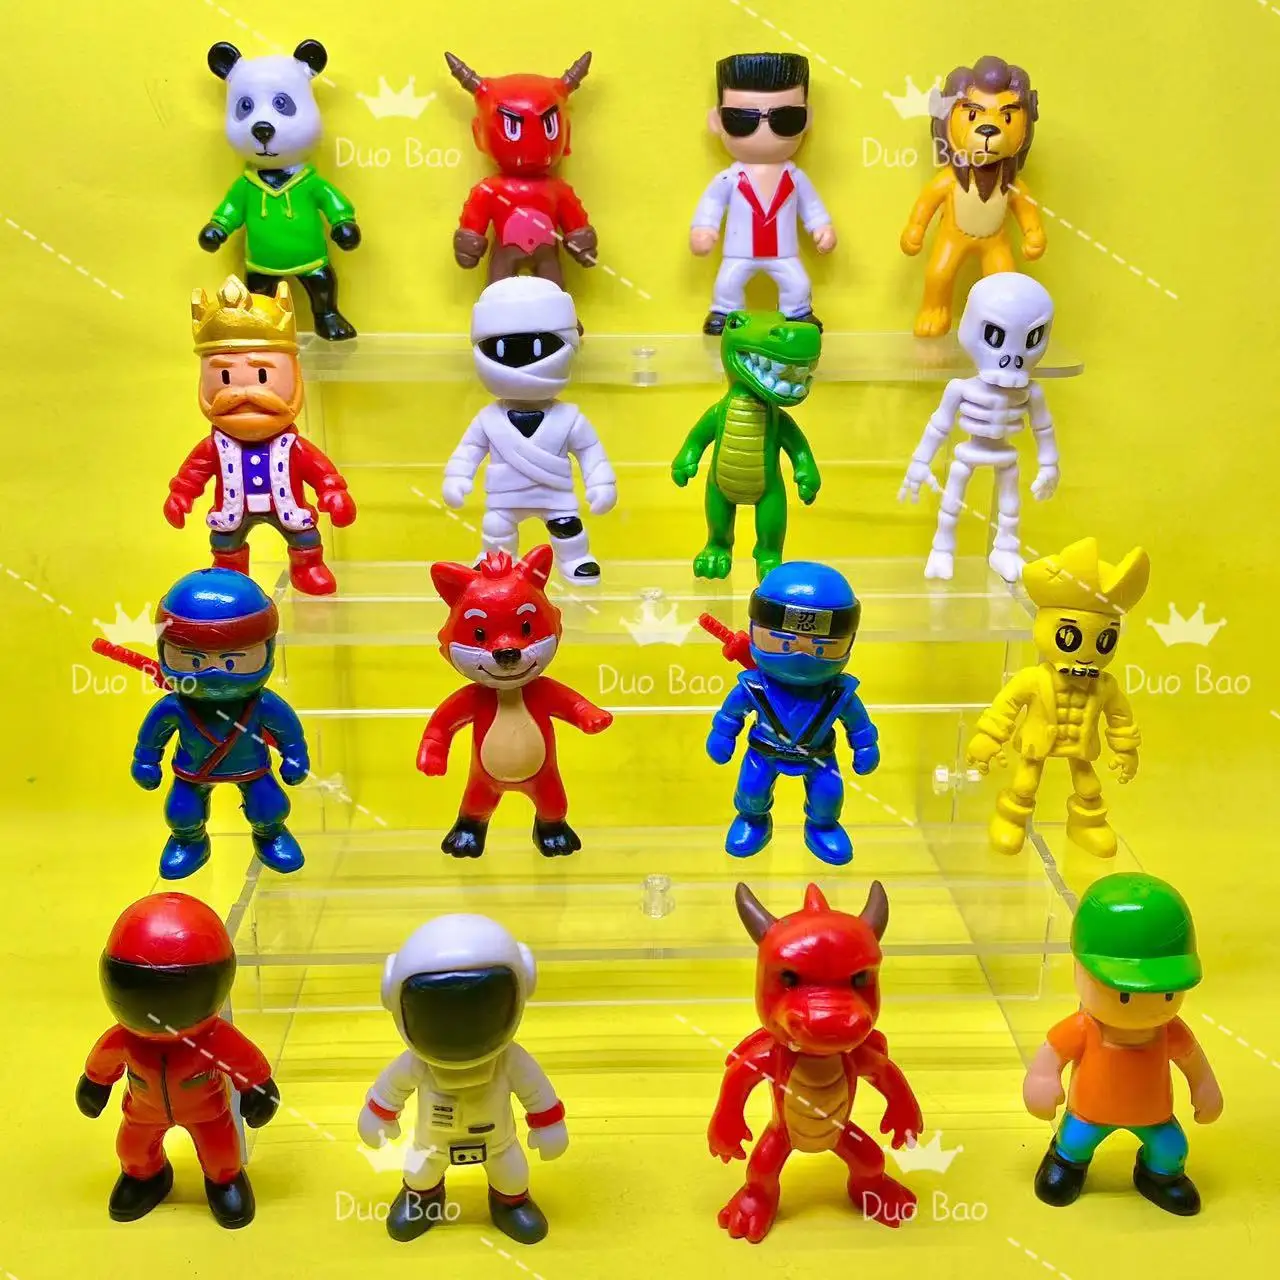 Stumble Guys Figure Toy Stumble Guys Figura Anime Action Figures Toy Set  For Boys PVC Model Collection Toys Kids - AliExpress